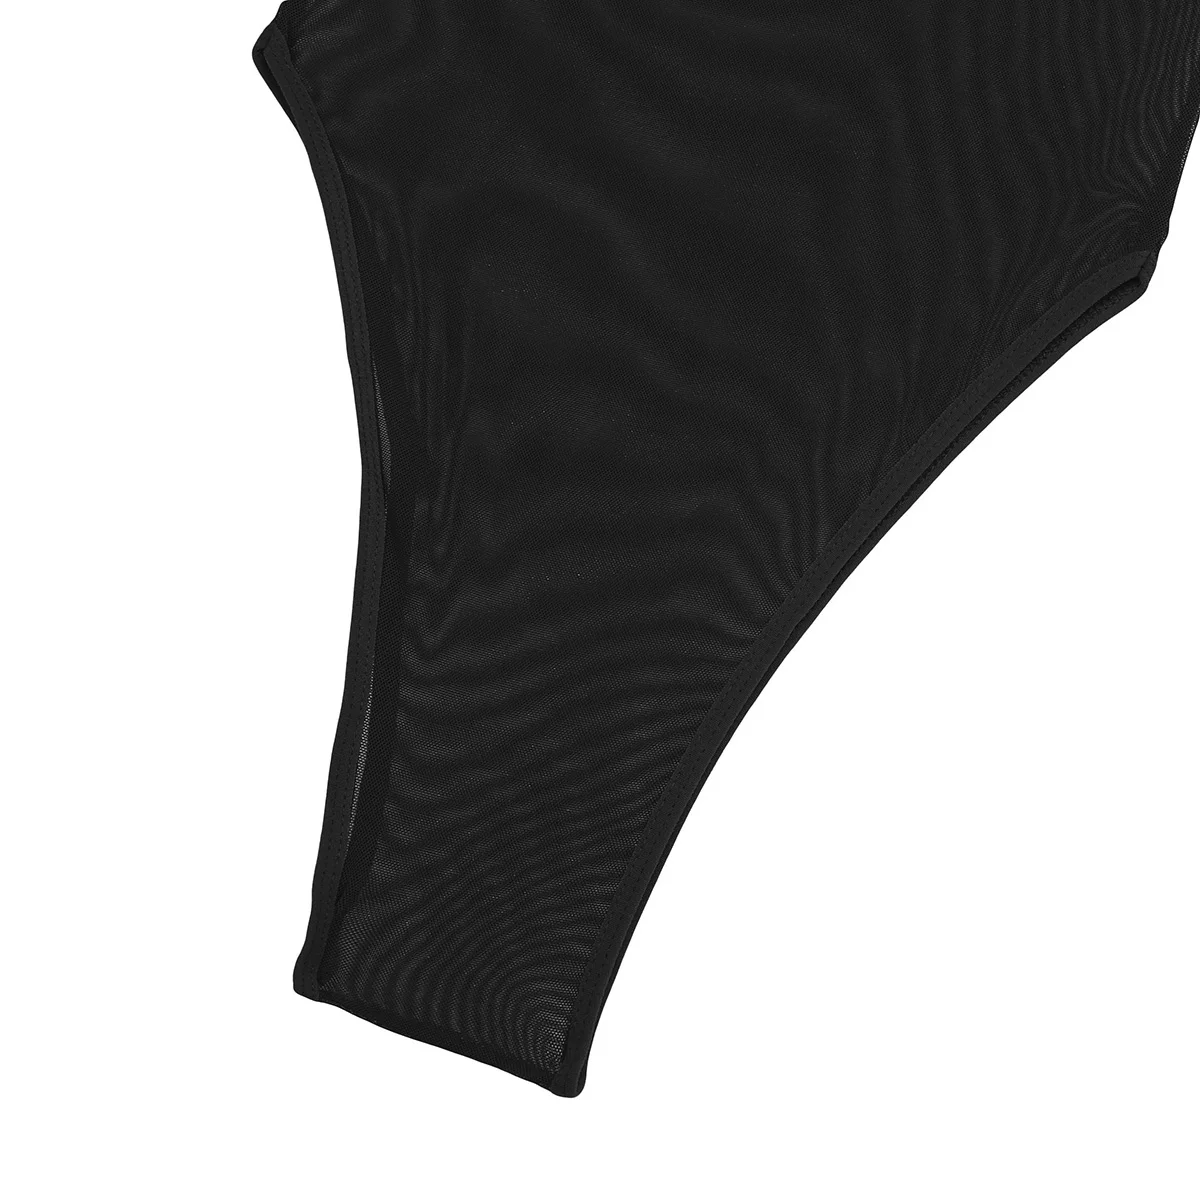 Iiniim, сексуальное женское экзотическое белье, Wetlook, прозрачный цельный комбинезон, сетчатый, с высоким вырезом, без рукавов, трико, боди, ночное белье